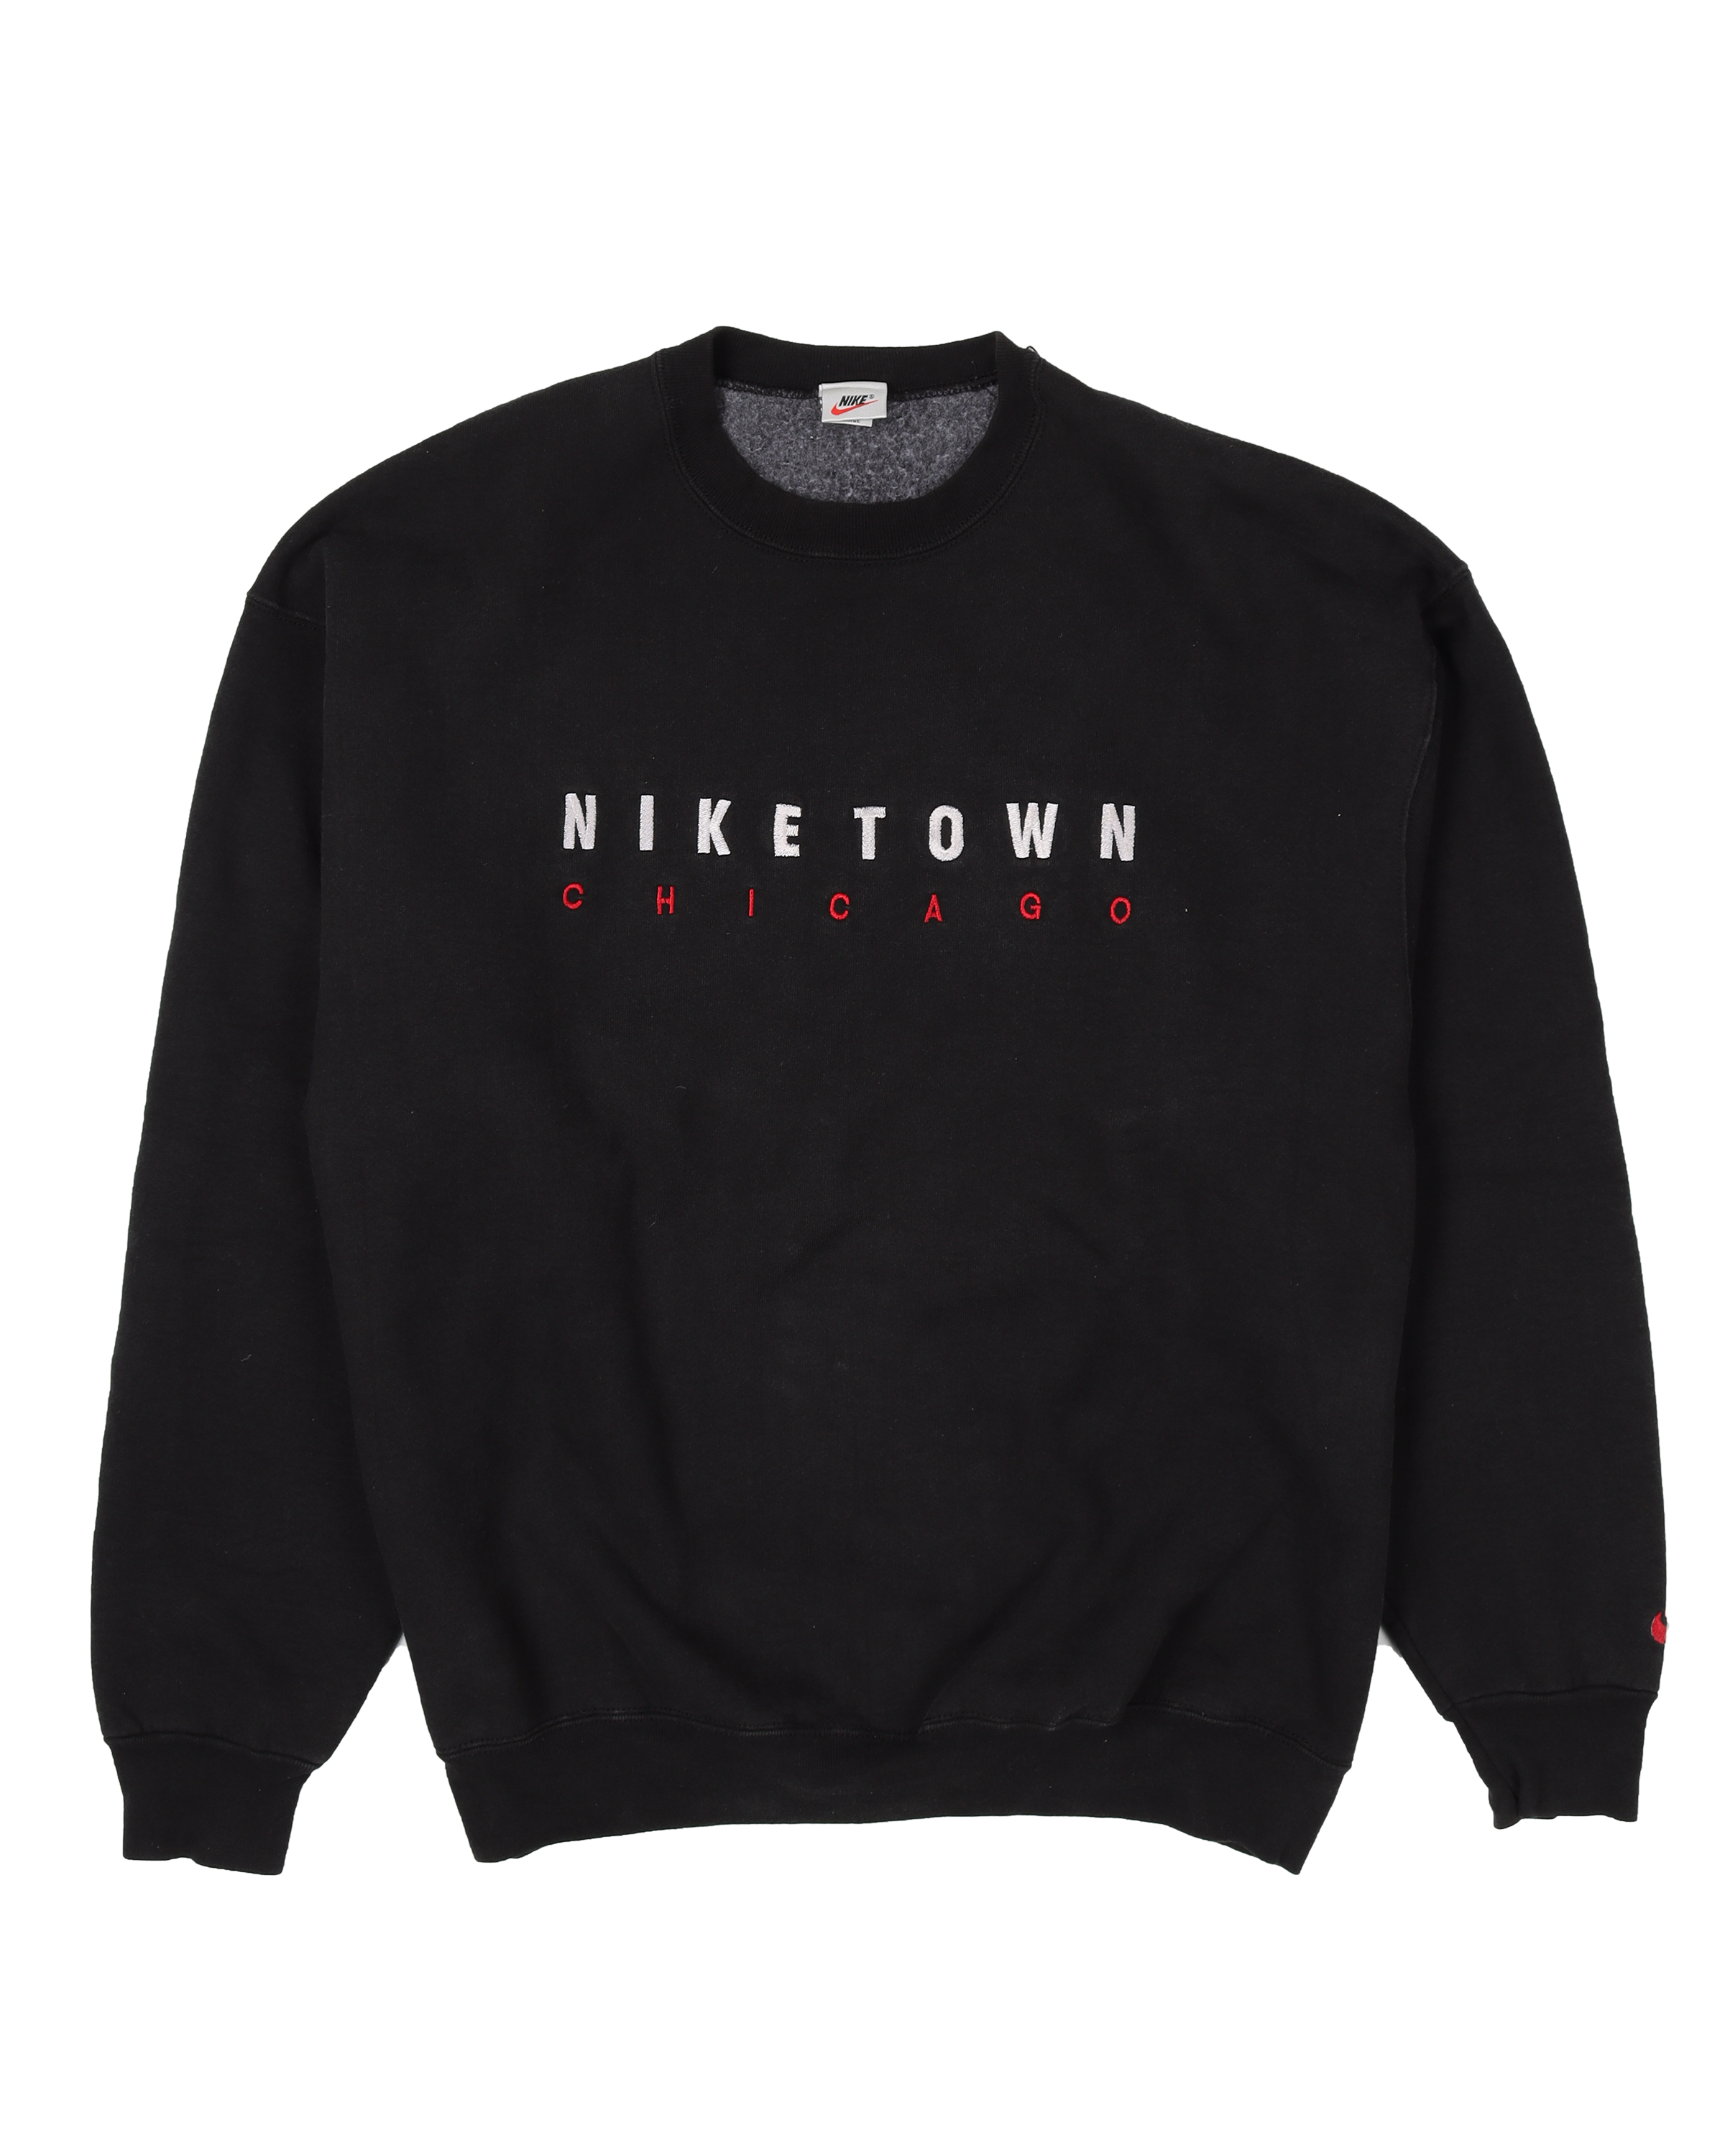 "Niketown Chicago" Sweatshirt